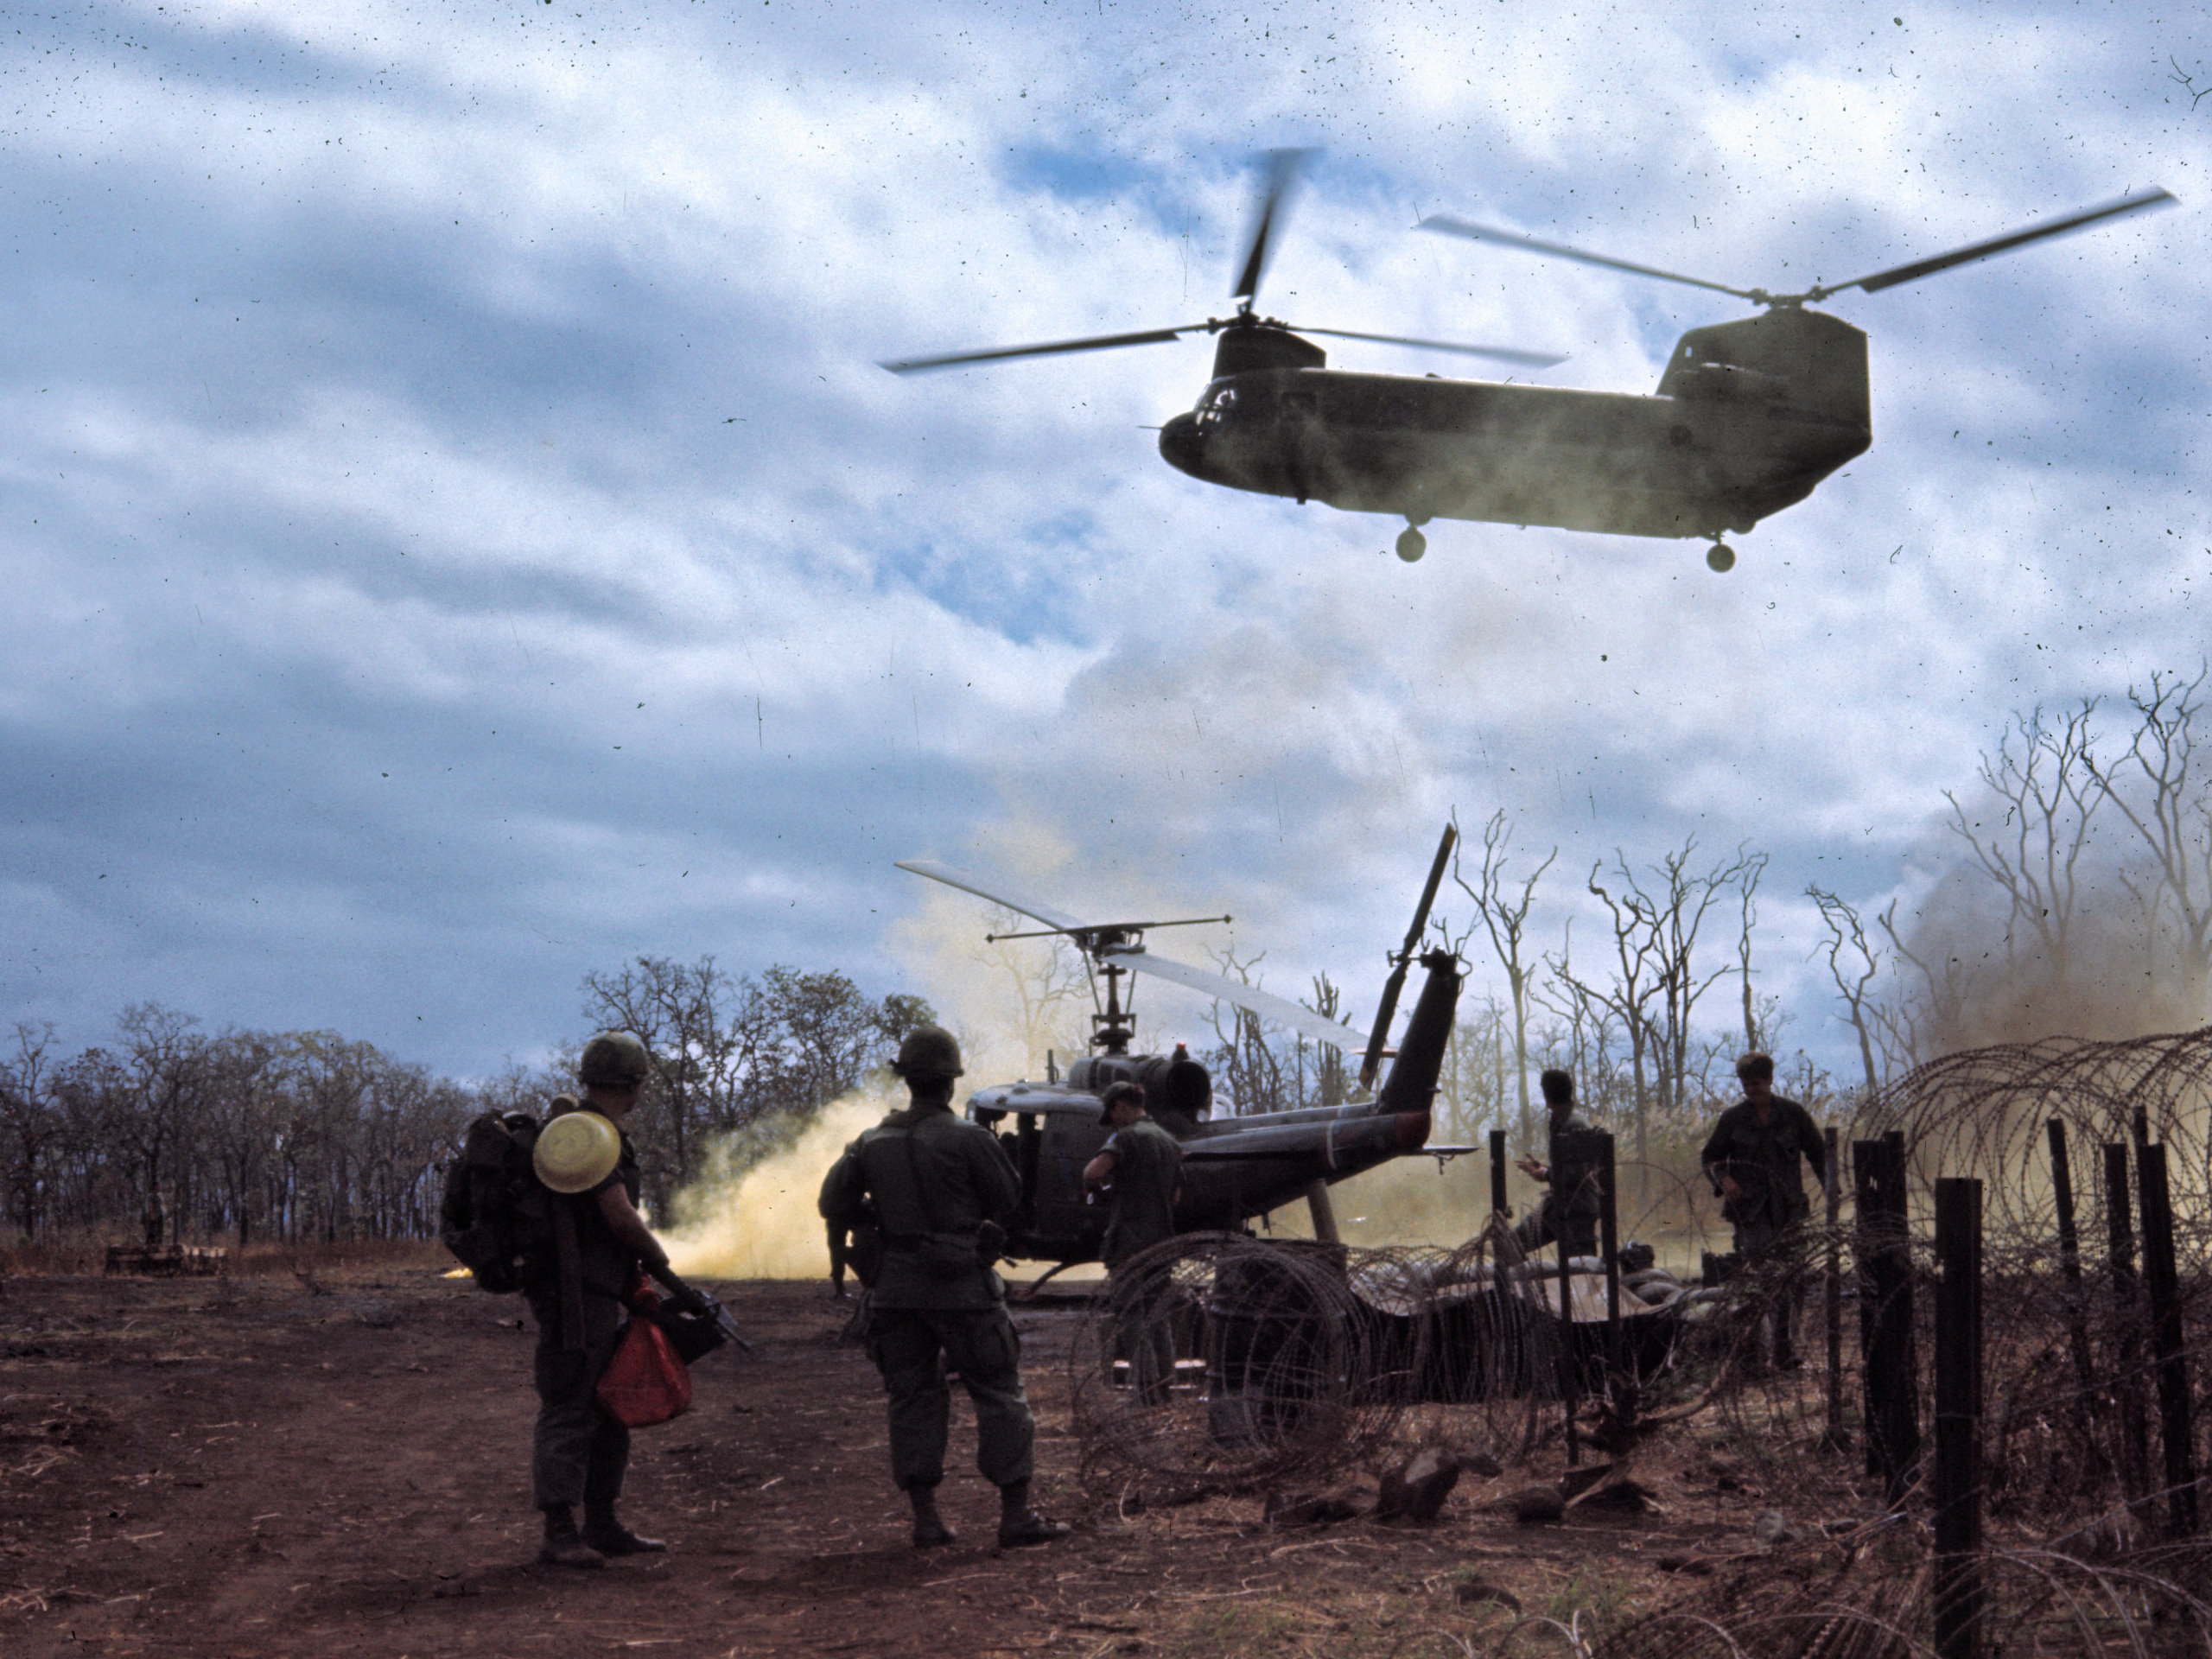 солдаты, самолет, армия, военный, вертолеты, Вьетнам, транспортные средства, CH- 47 Chinook, UH - 1 Iroquois - обои на рабочий стол